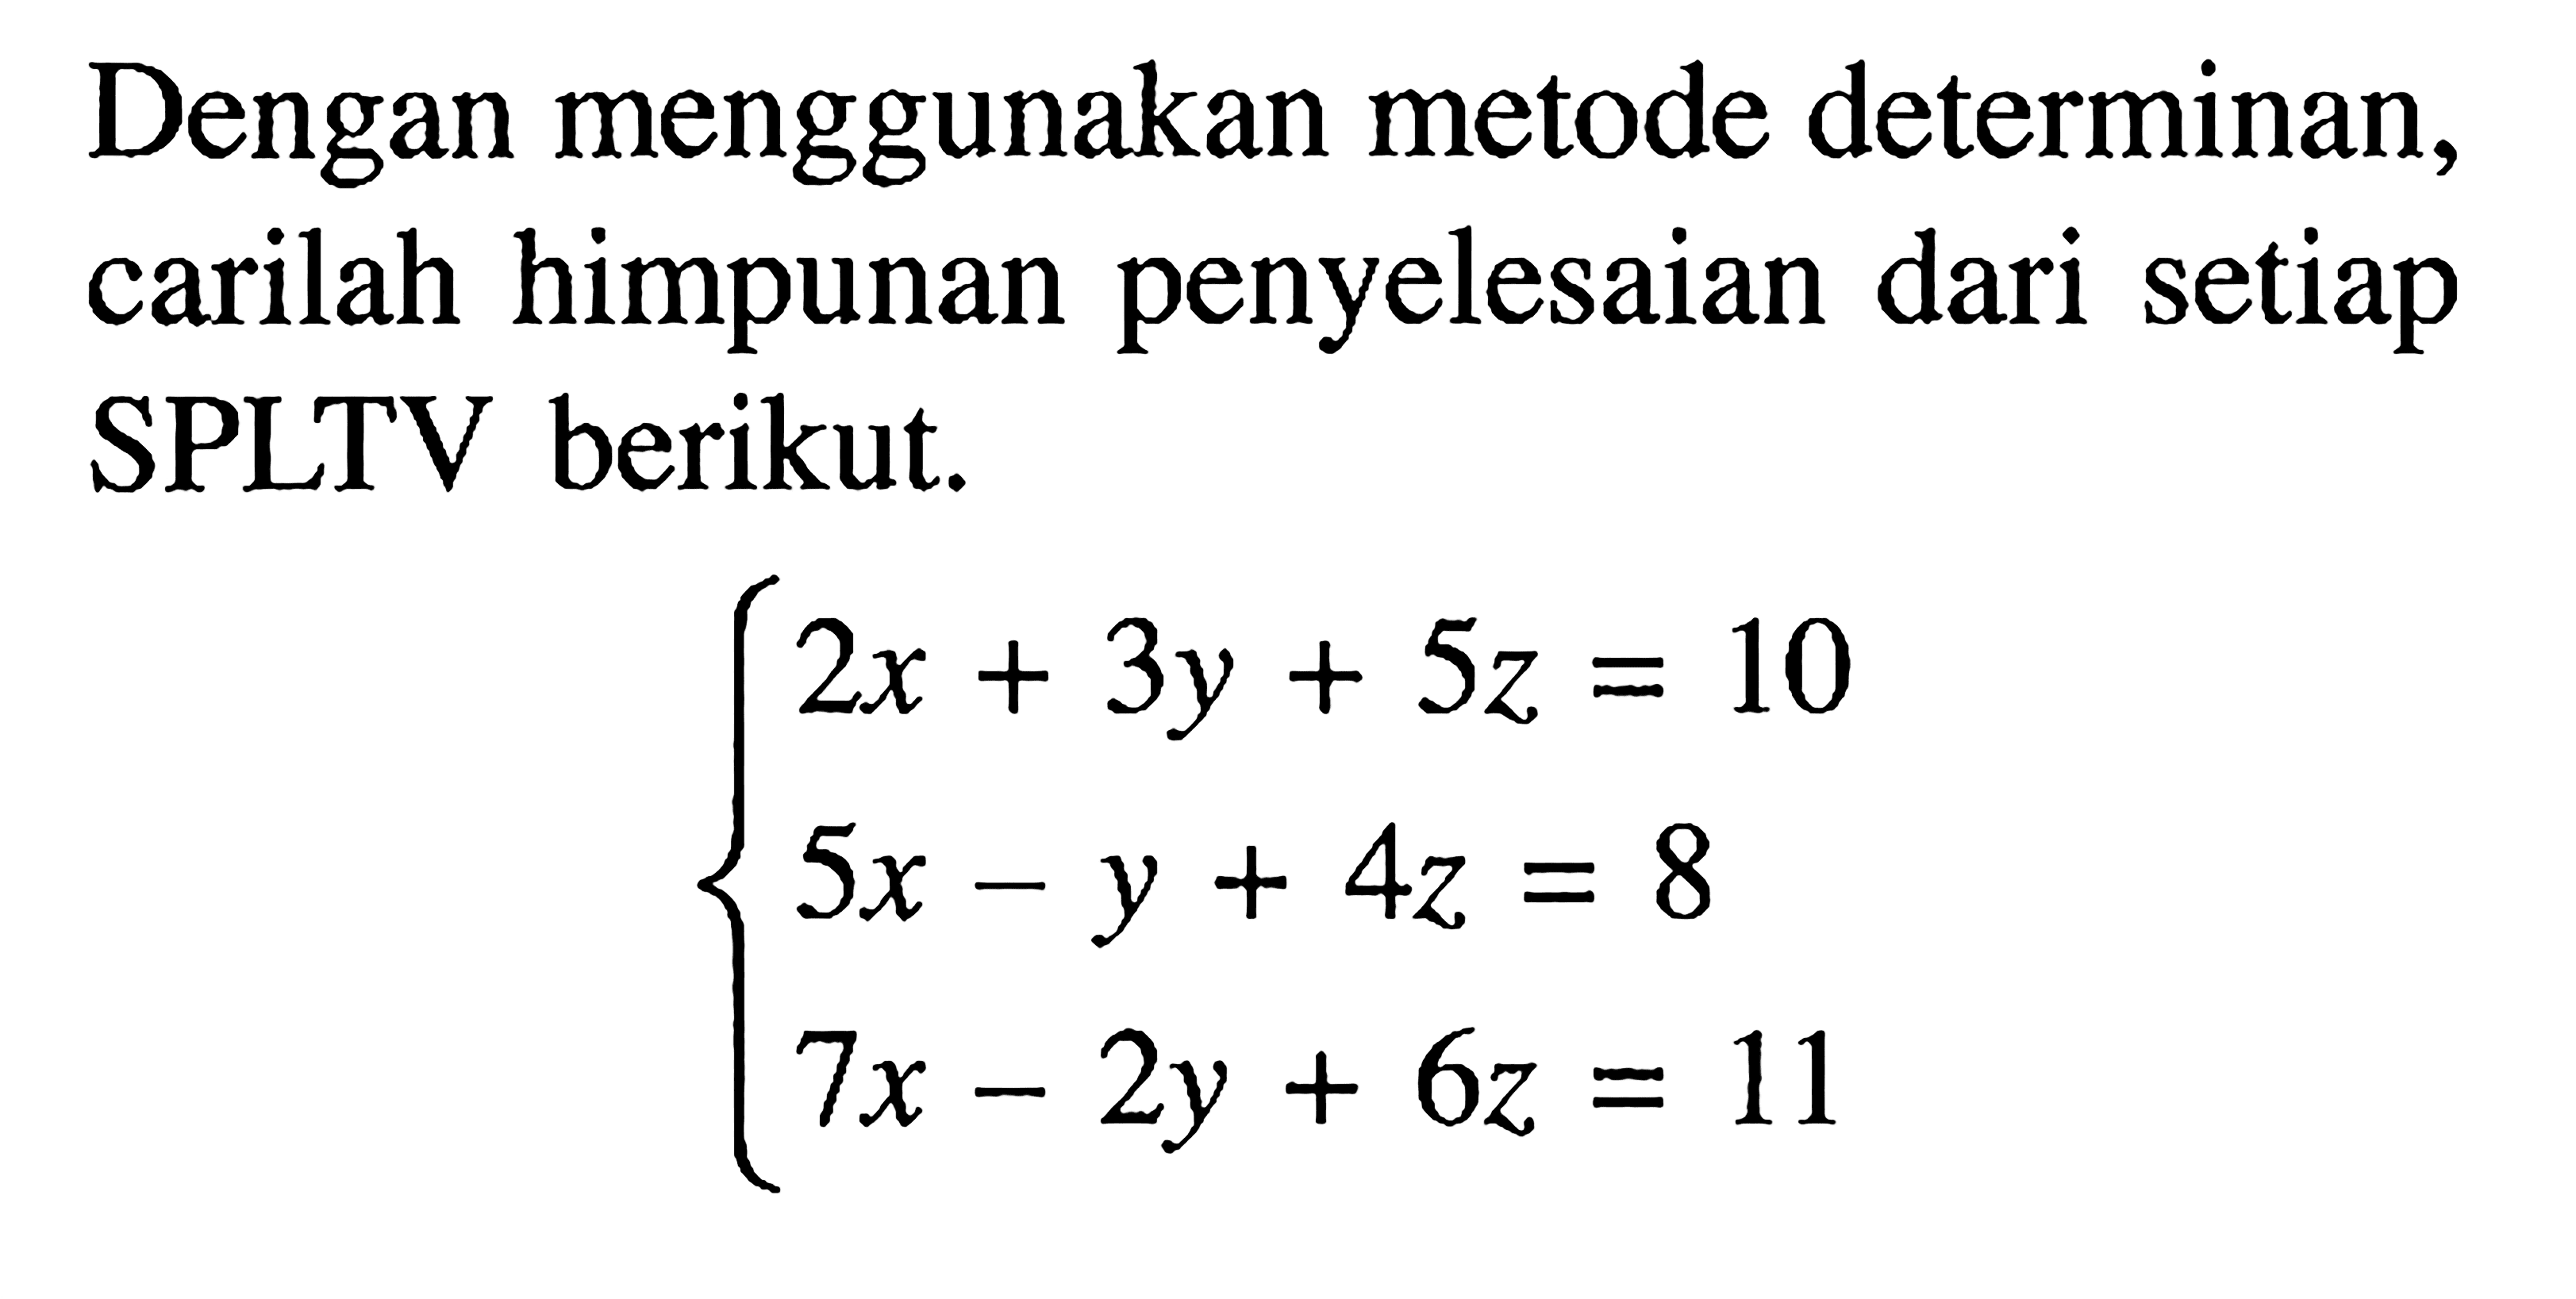 Dengan menggunakan metode determinan, carilah himpunan penyelesaian dari setiap SPLTV berikut. 2x+3y+5z=10 5x-y+4z=8 7x-2y+6z=11